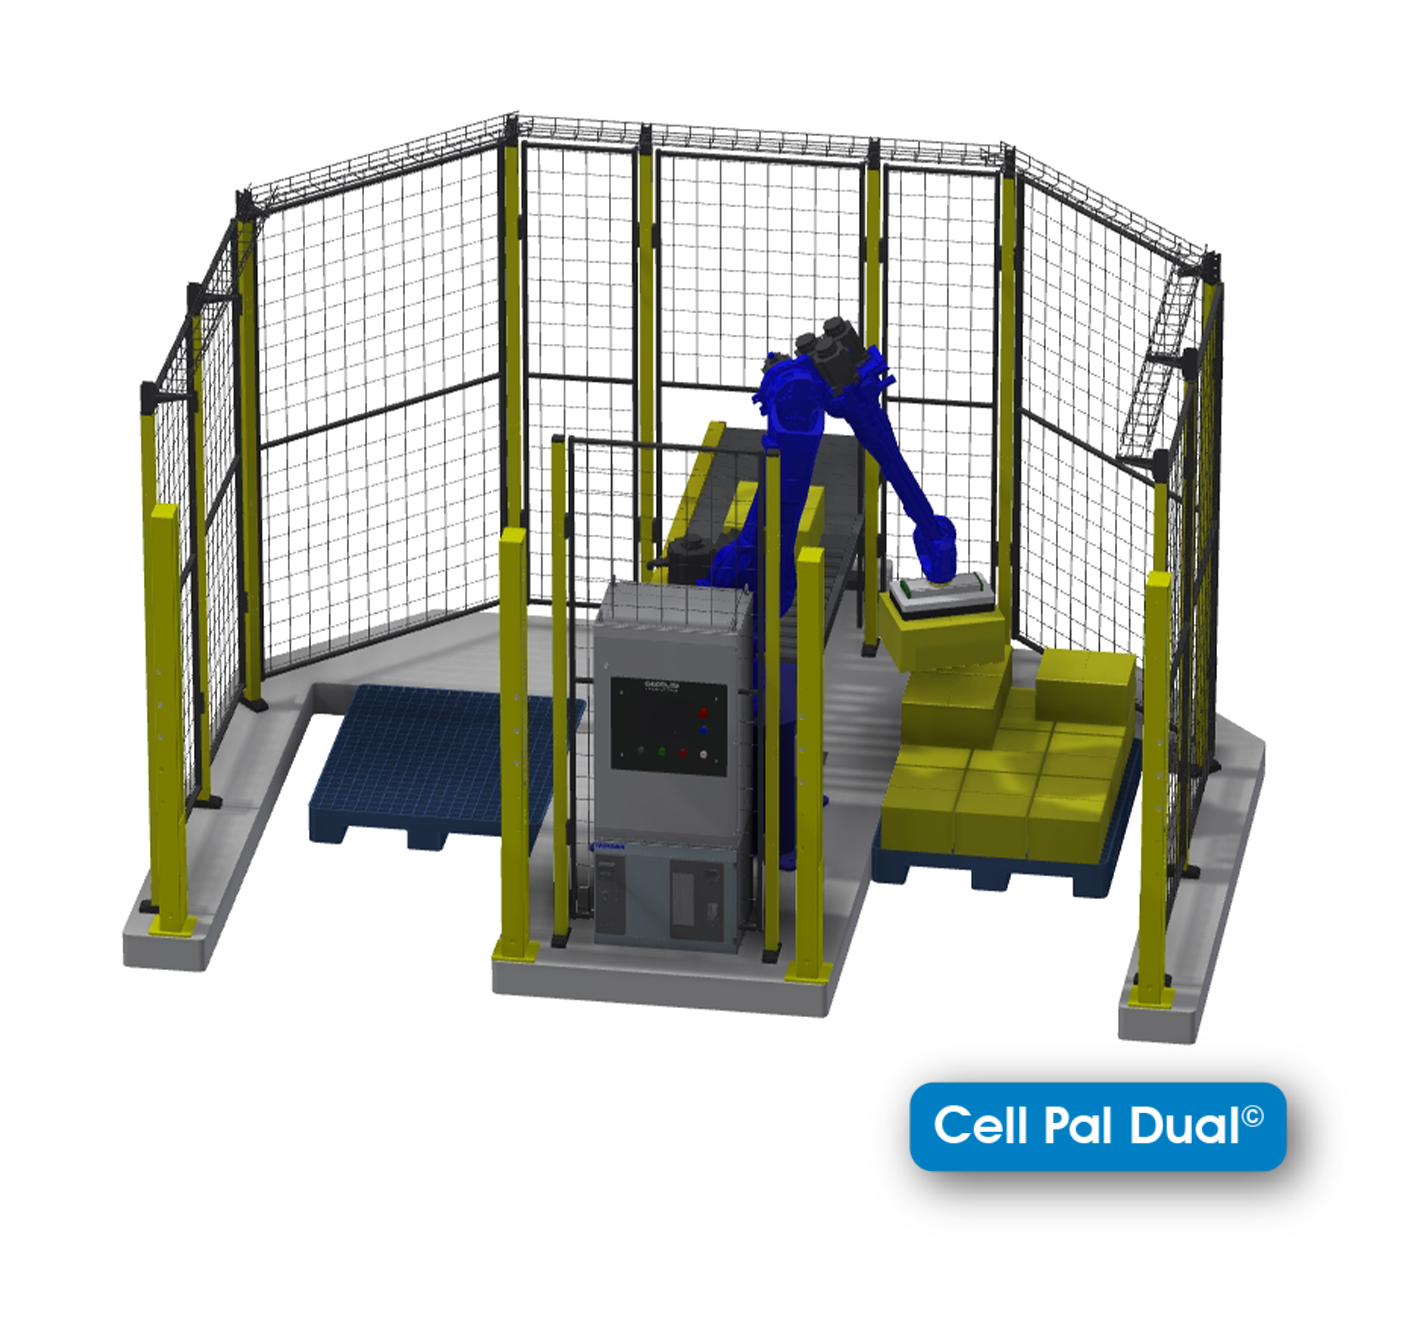 CellPad dual site